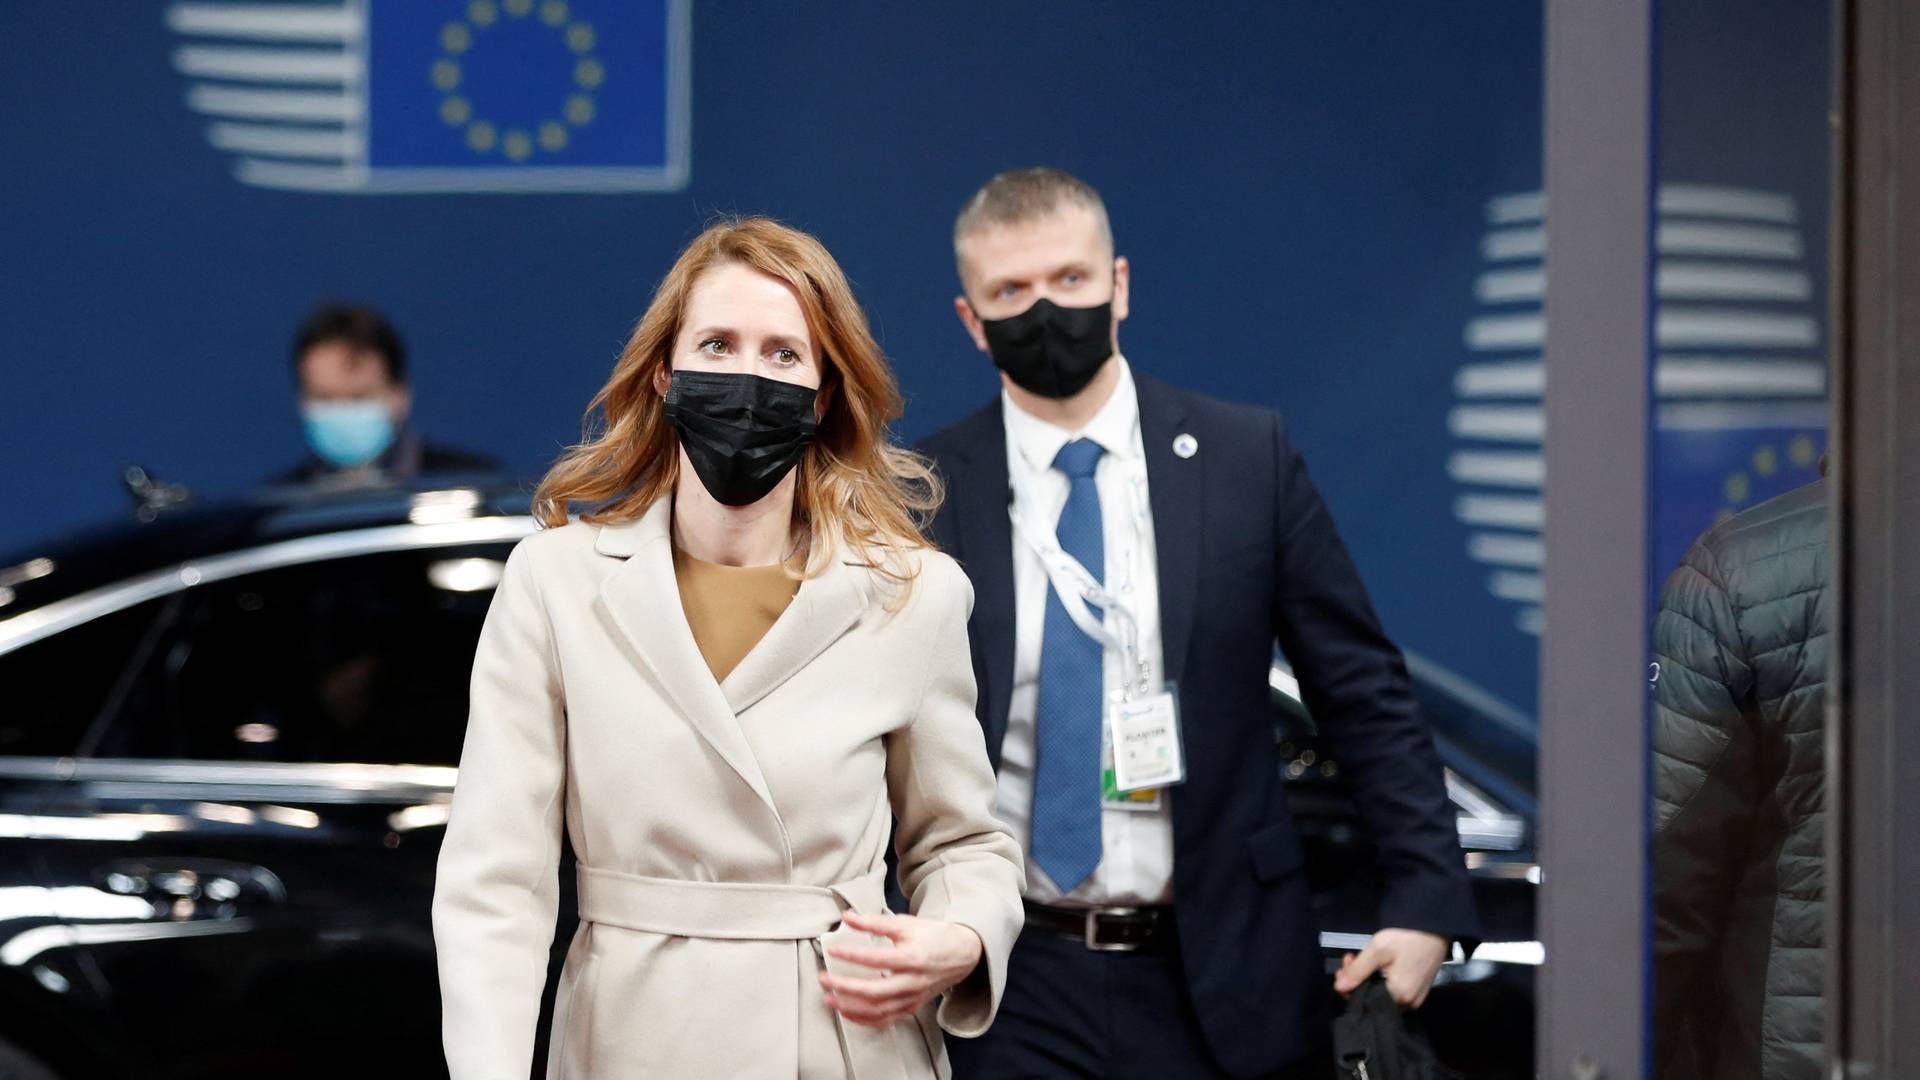 Estlands premierminister, Kaja Kallas, ankommer til EU-topmøde. Hun er valgt til at tale på Danmarks vegne, fordi Mette Frederiksen er syg. | Foto: JOHANNA GERON/REUTERS / X07006